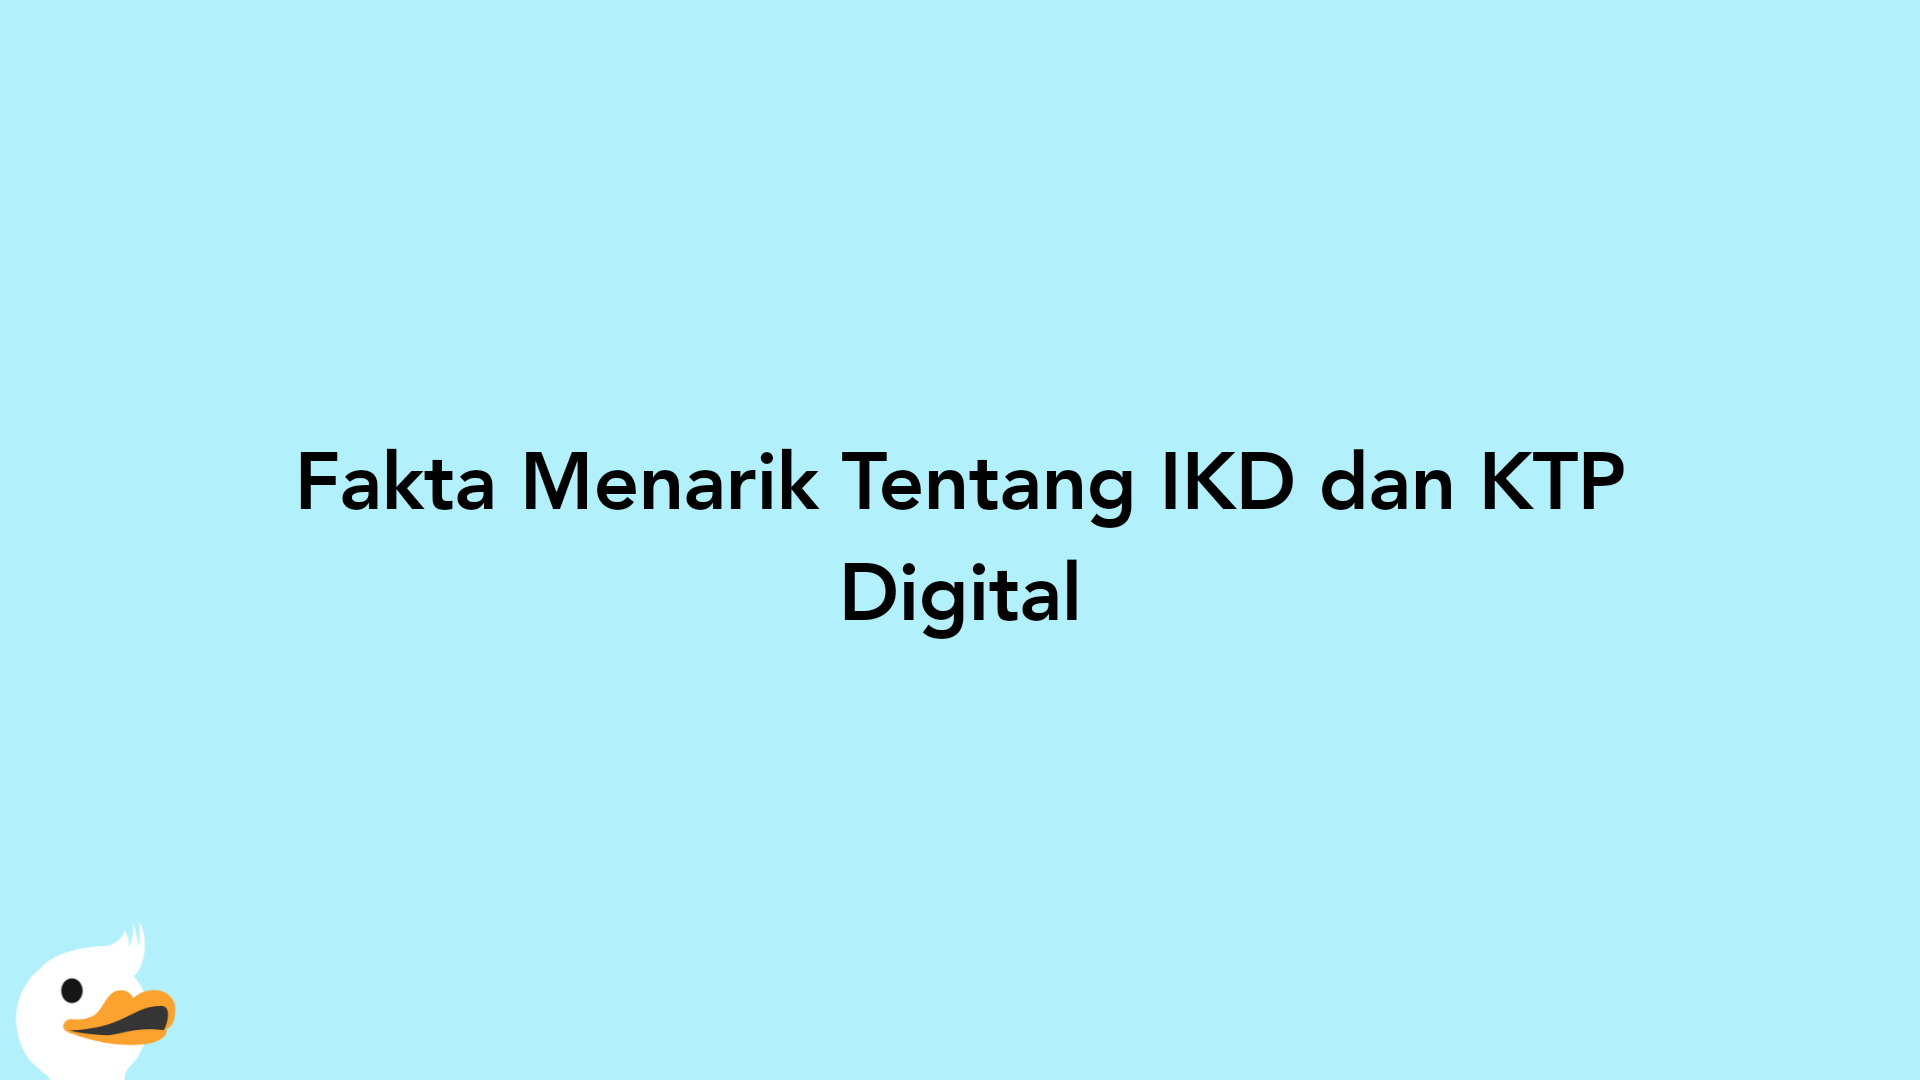 Fakta Menarik Tentang IKD dan KTP Digital